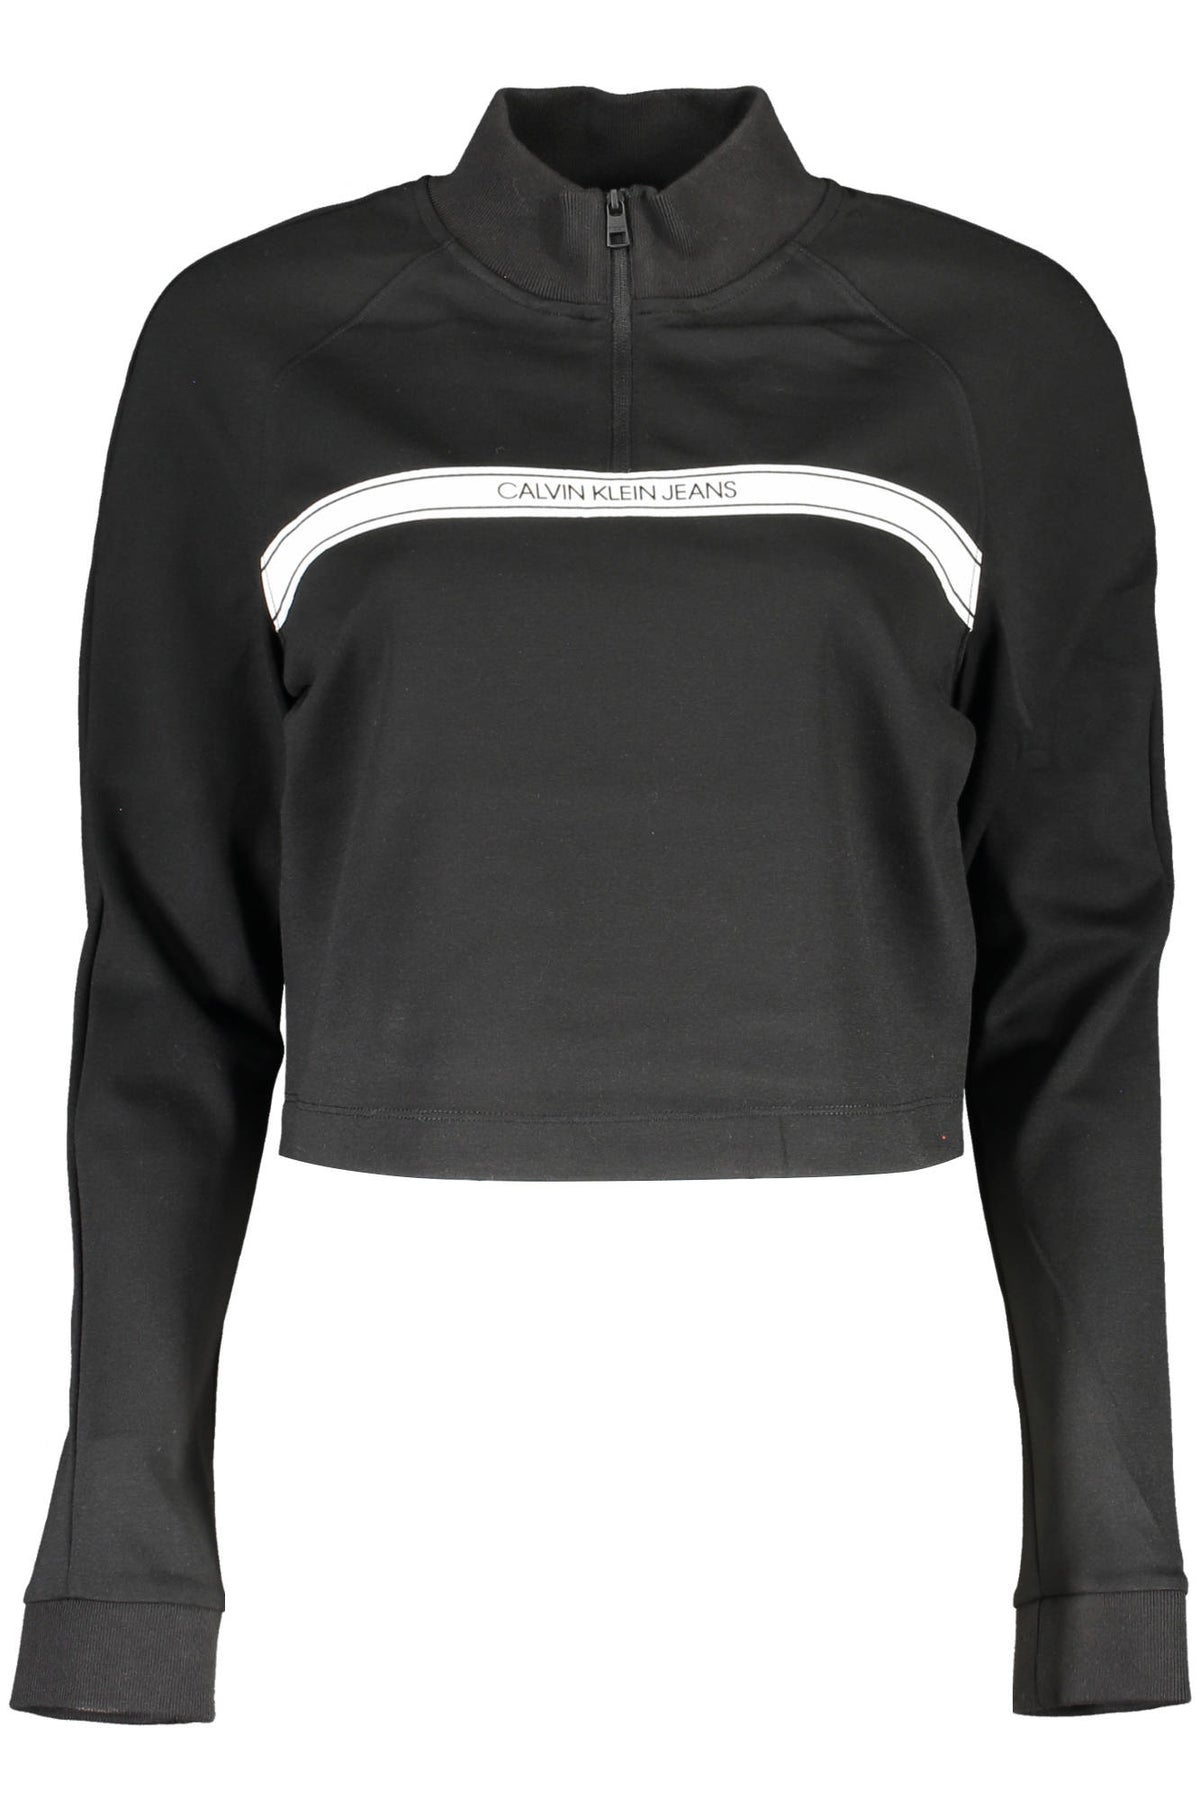 Calvin Klein Damen Pullover Sweatshirt mit Stehkragen, langarm